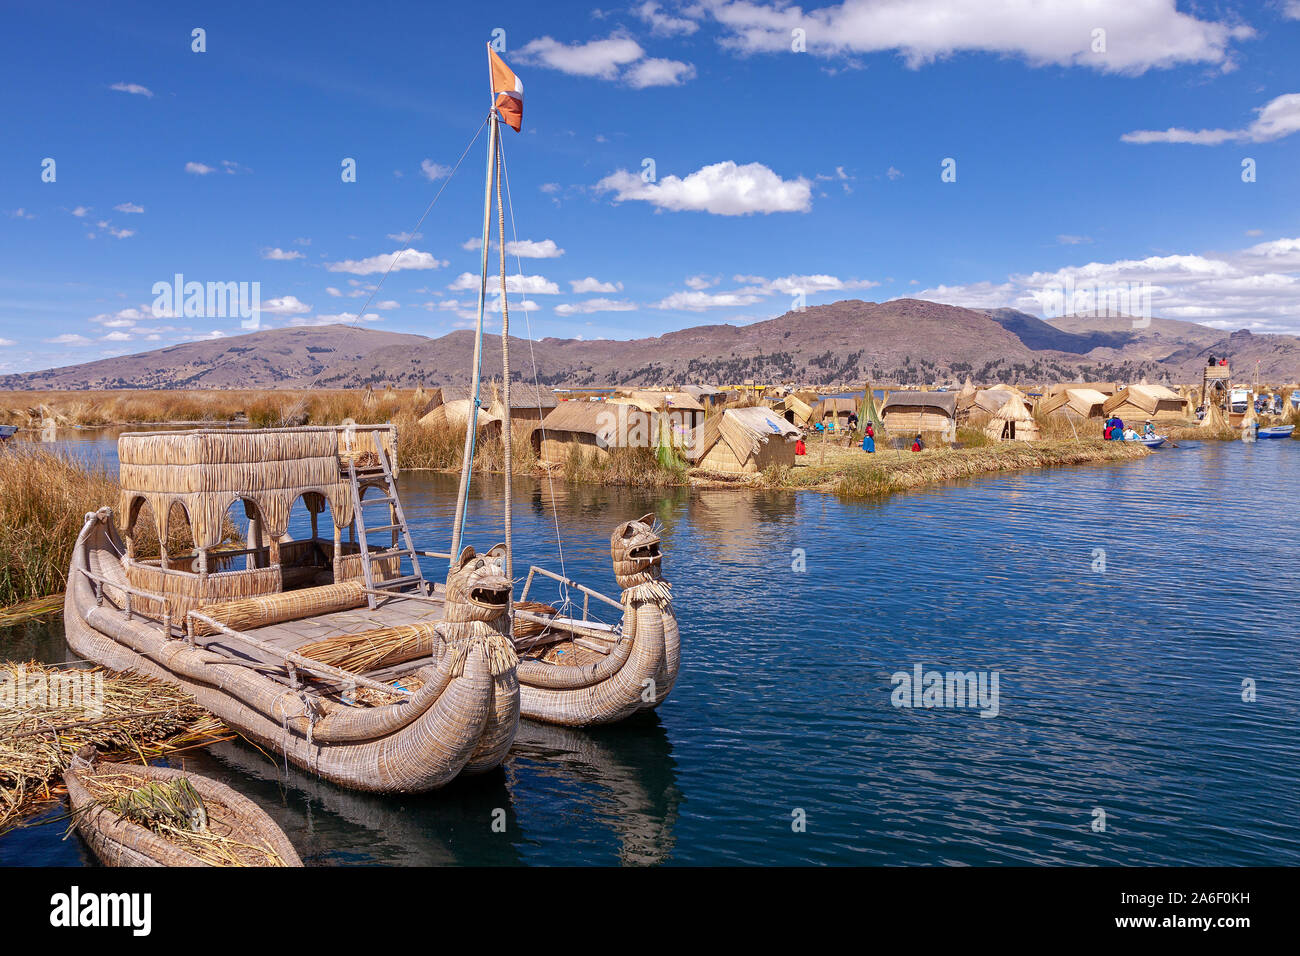 Un bateau fait de reed sur l'une des îles Uros du Lac Titicaca, au Pérou. Banque D'Images